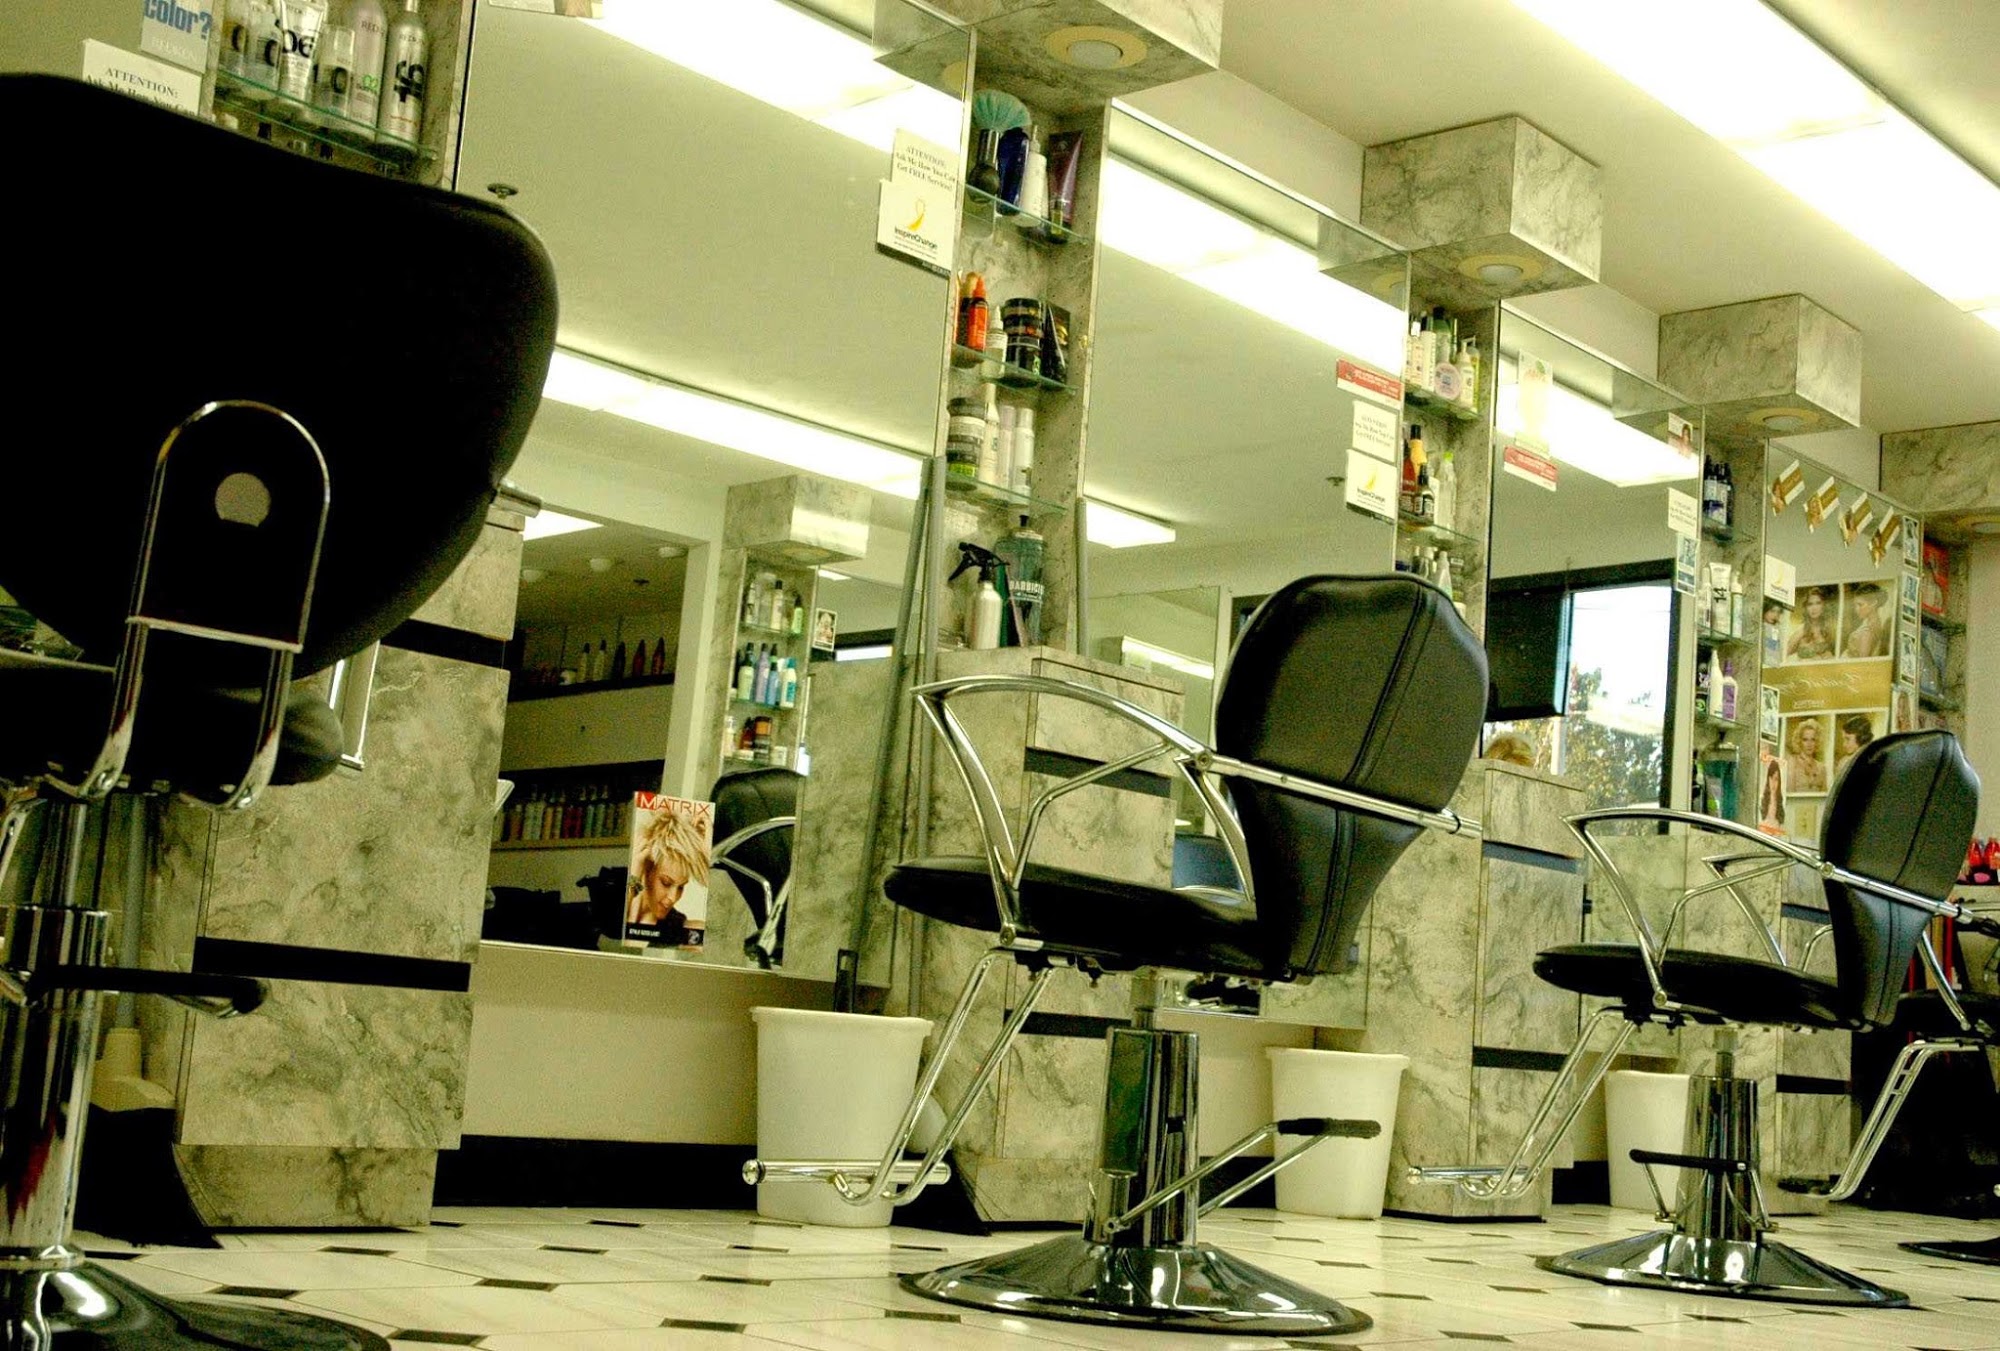 Hair Dimensions Salon & Spa